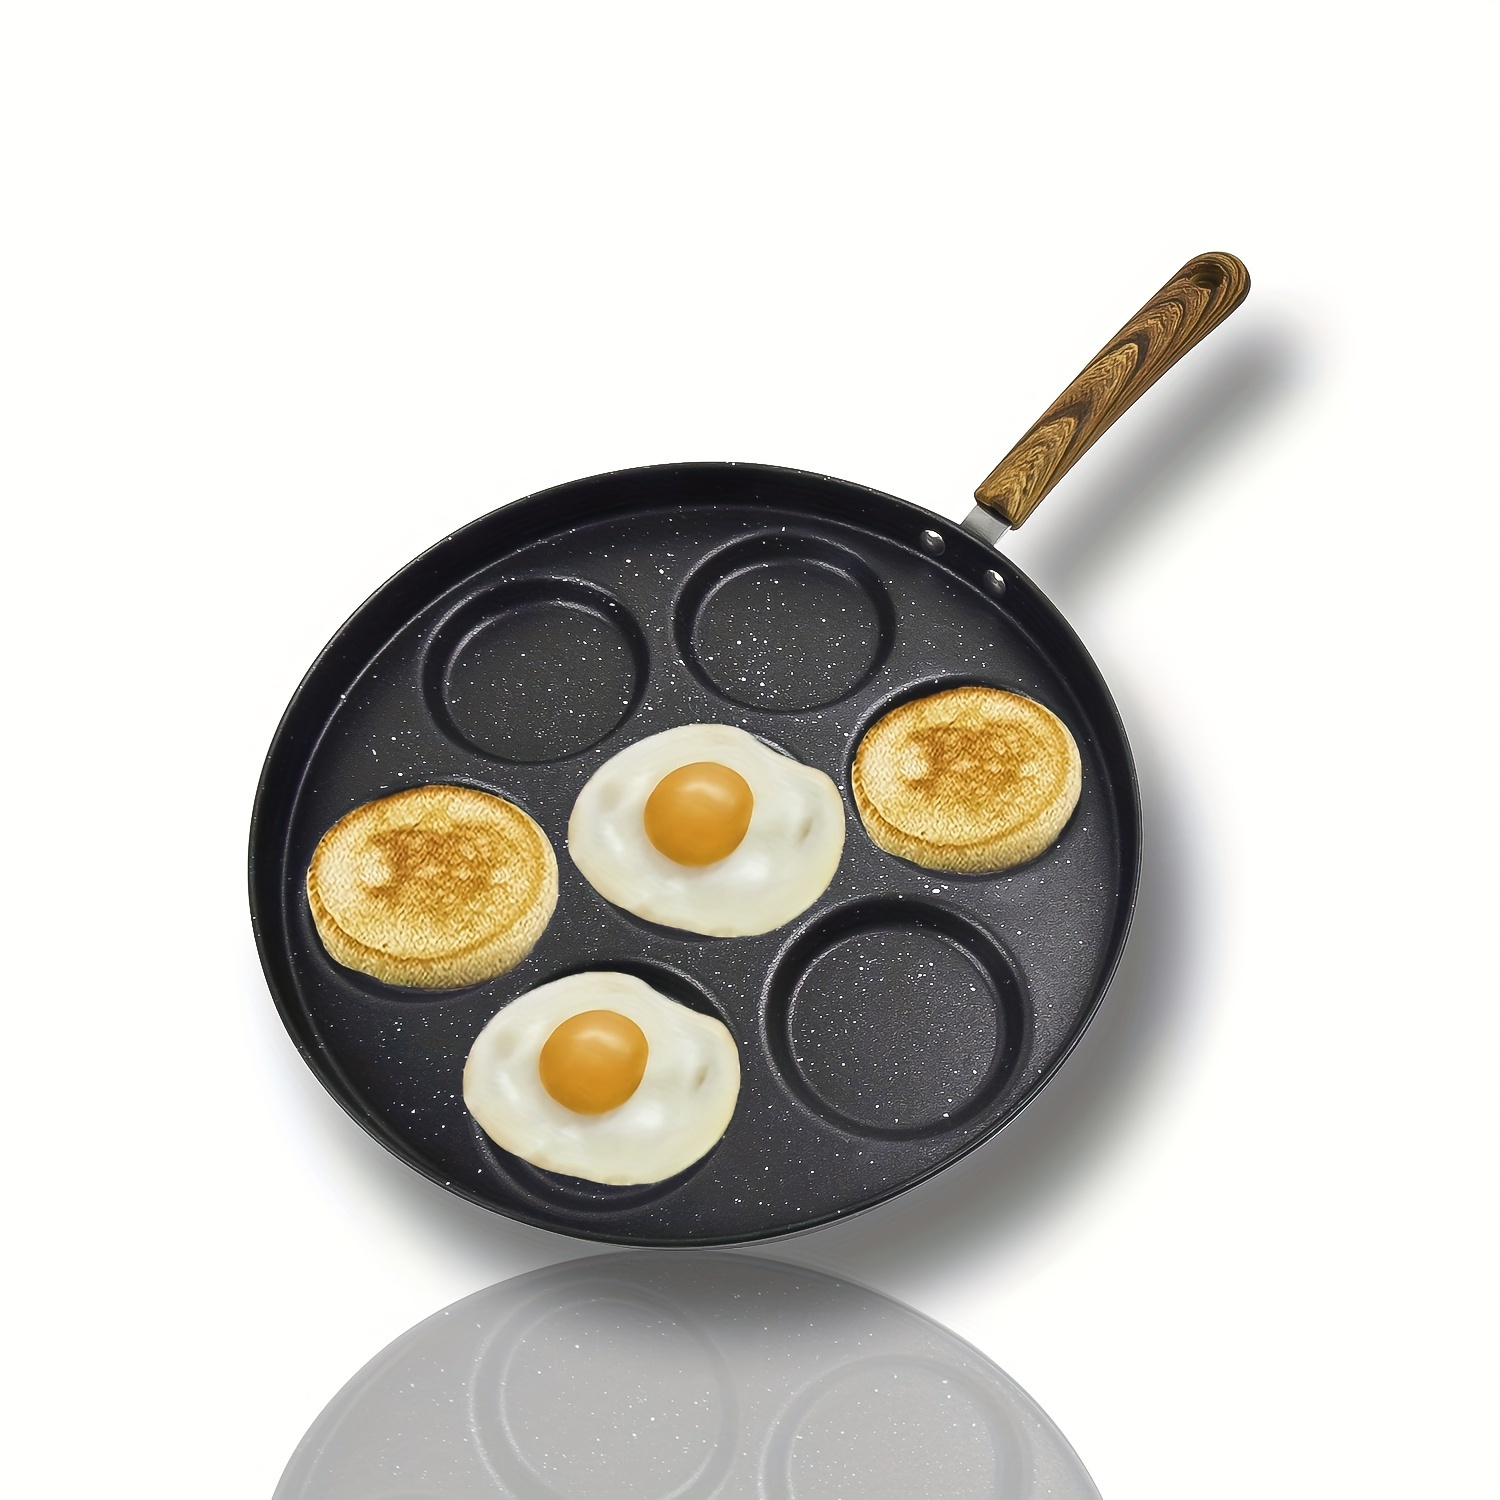 sarten para pancakes panqueques de ceramica antiadherente accesorios cocina